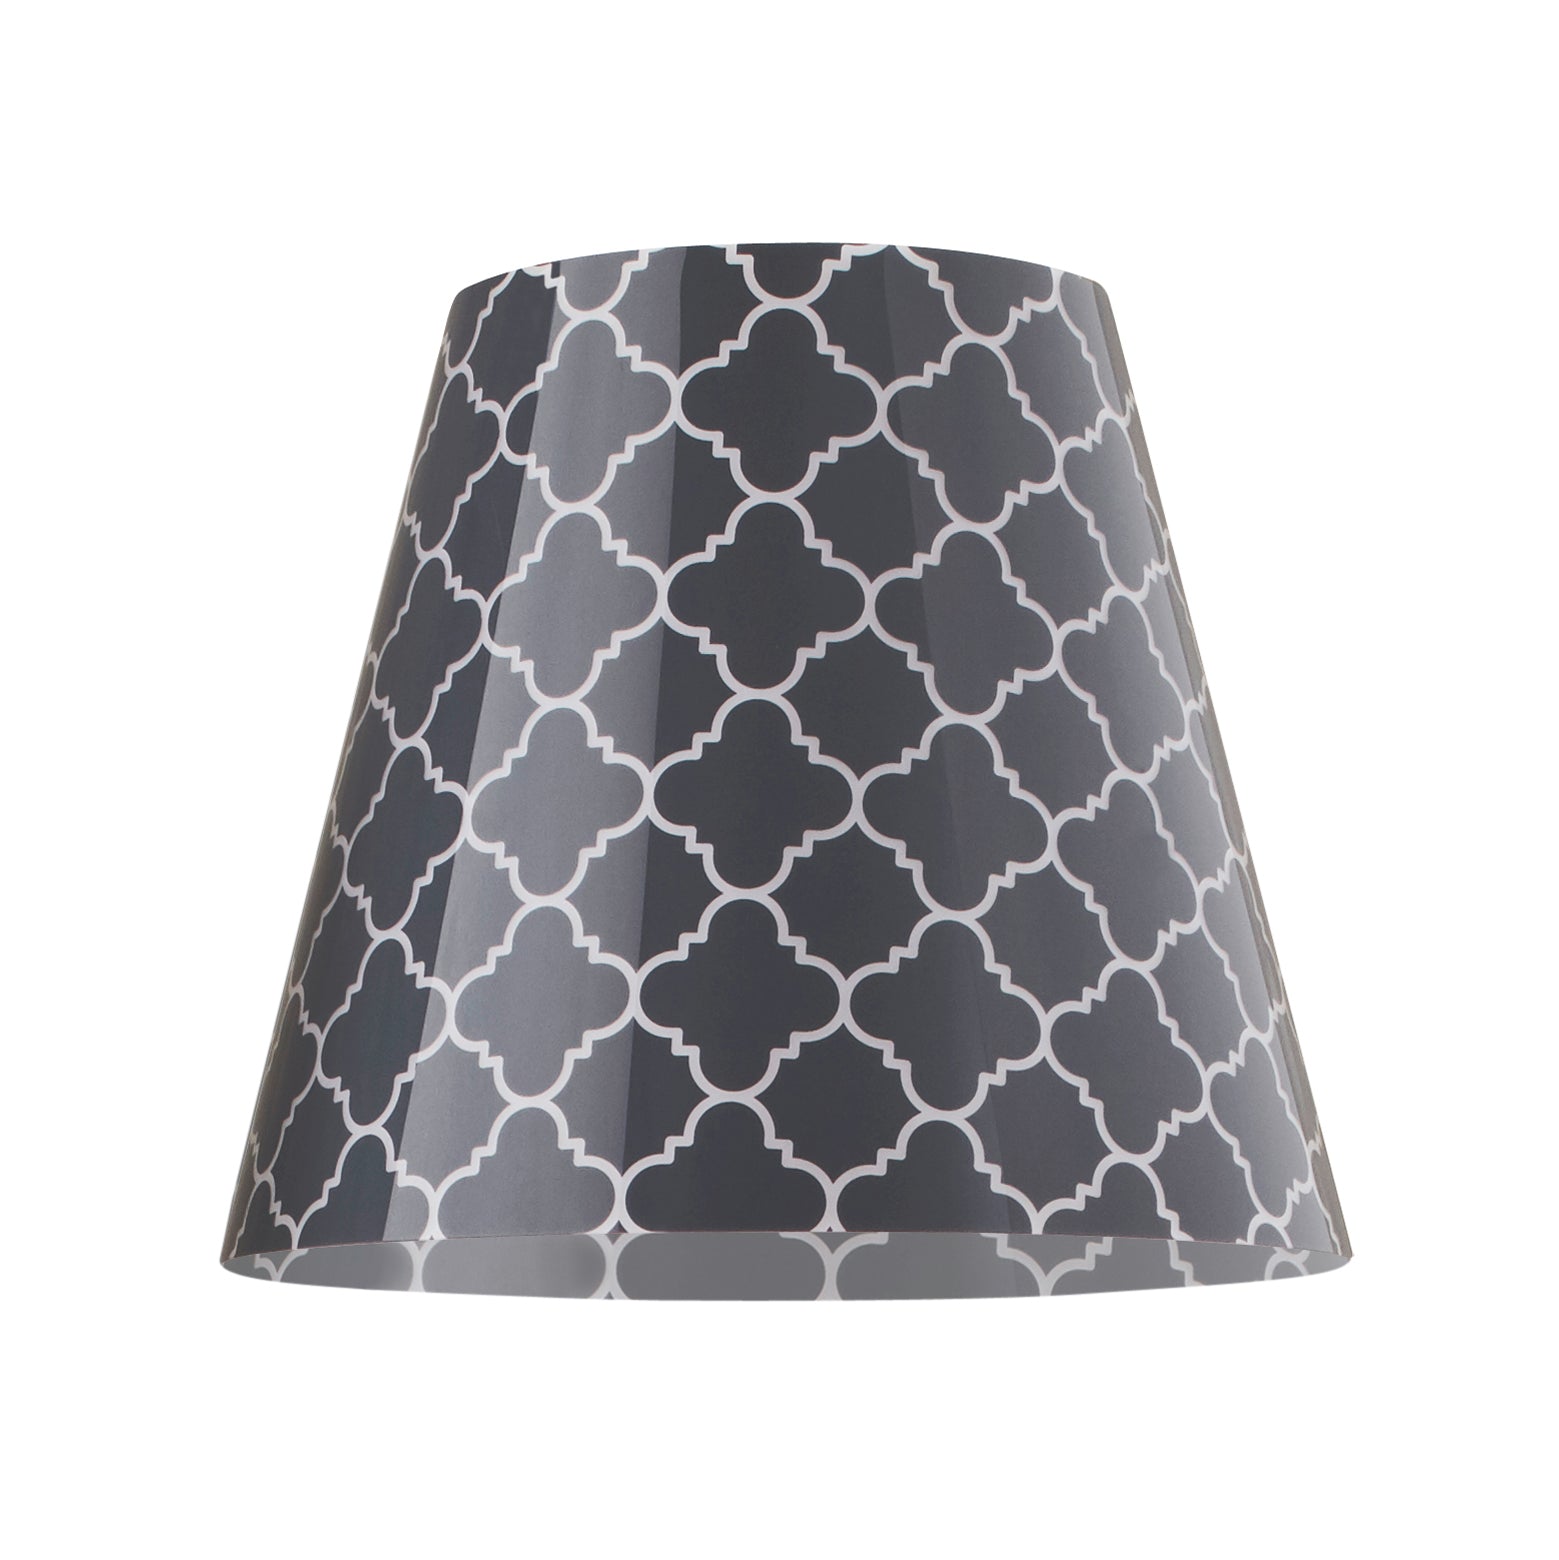 Wechselbares Design Cover für den Swap Lampenschirm von Moree; rund, nach unten leicht ausgestellt, anthrazit-weiß im Vierpass-Design.